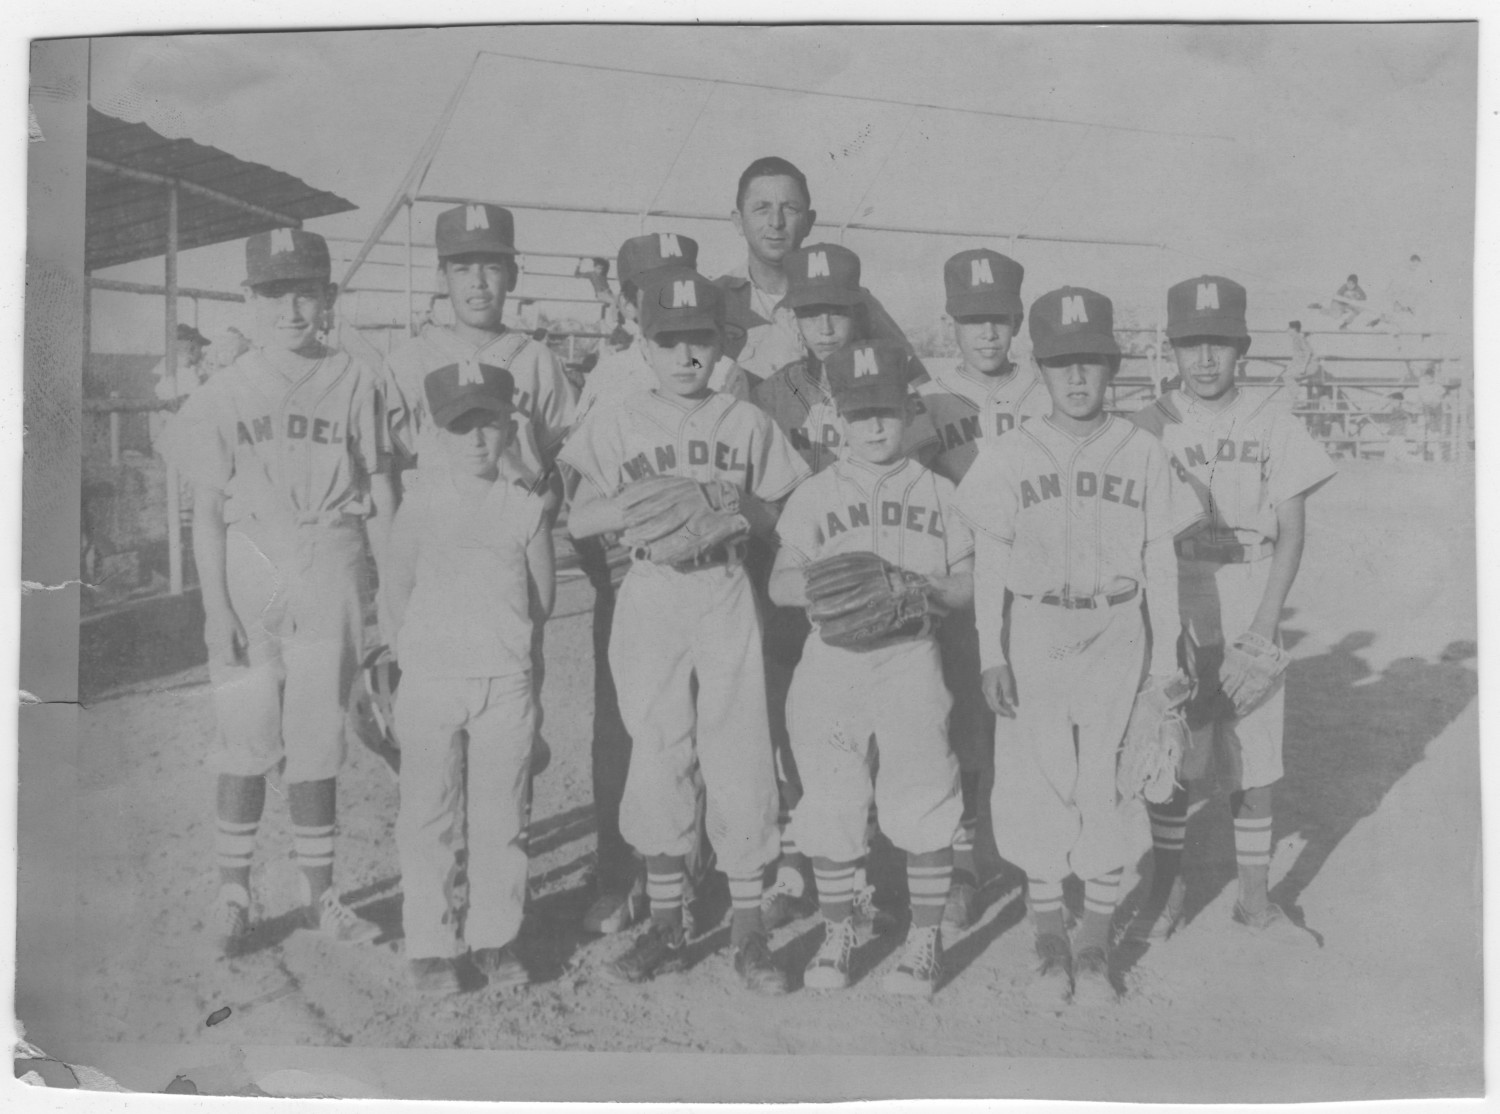 A teenage boy's little league baseball team portrait in the 1940's